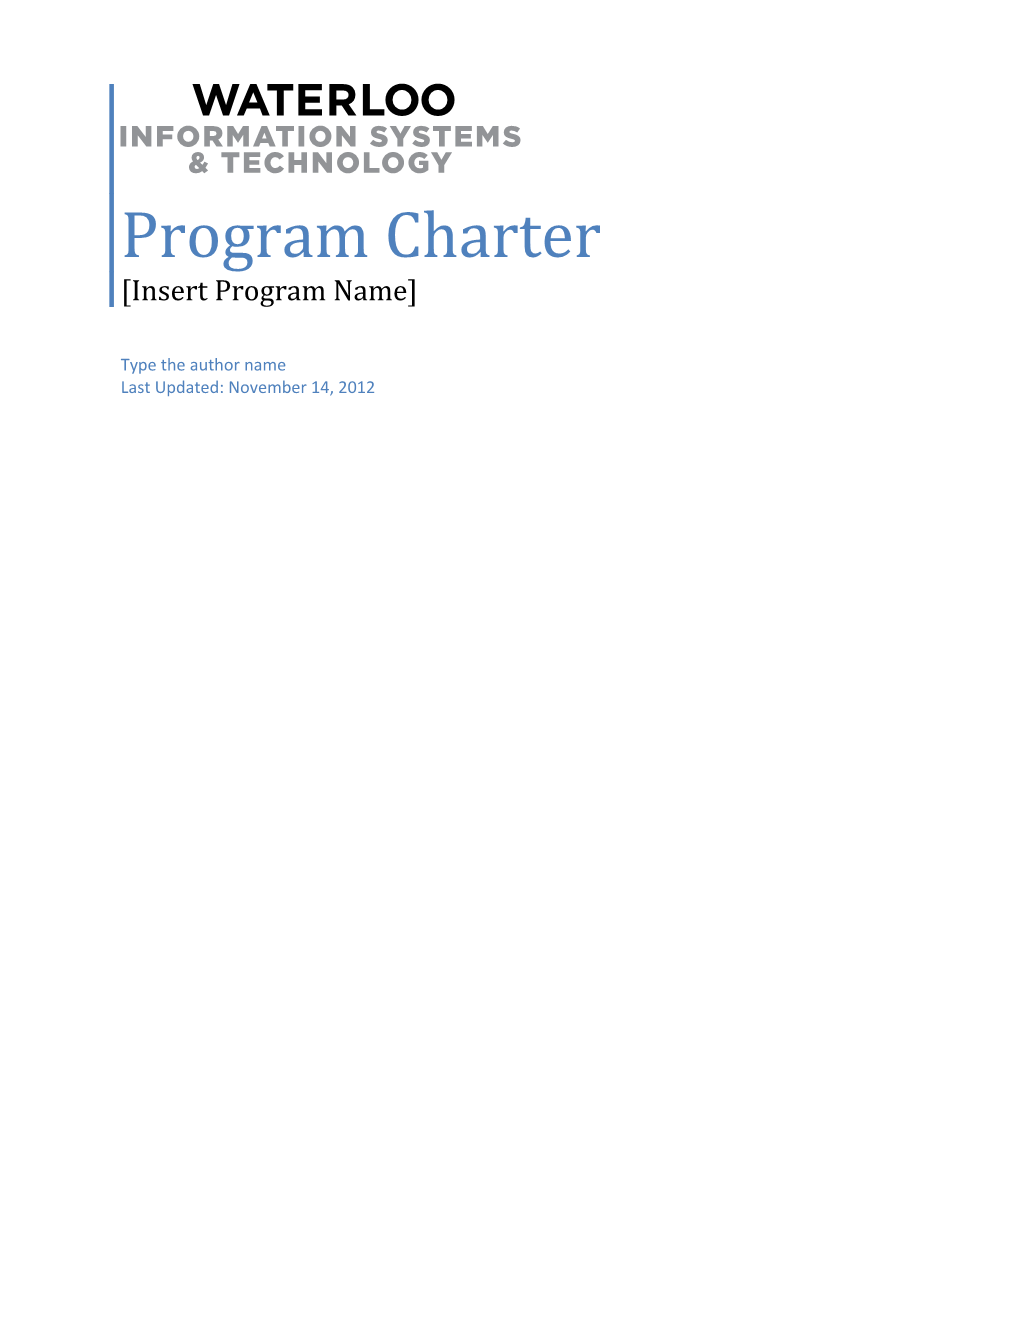 Program Charter Insert Program Name